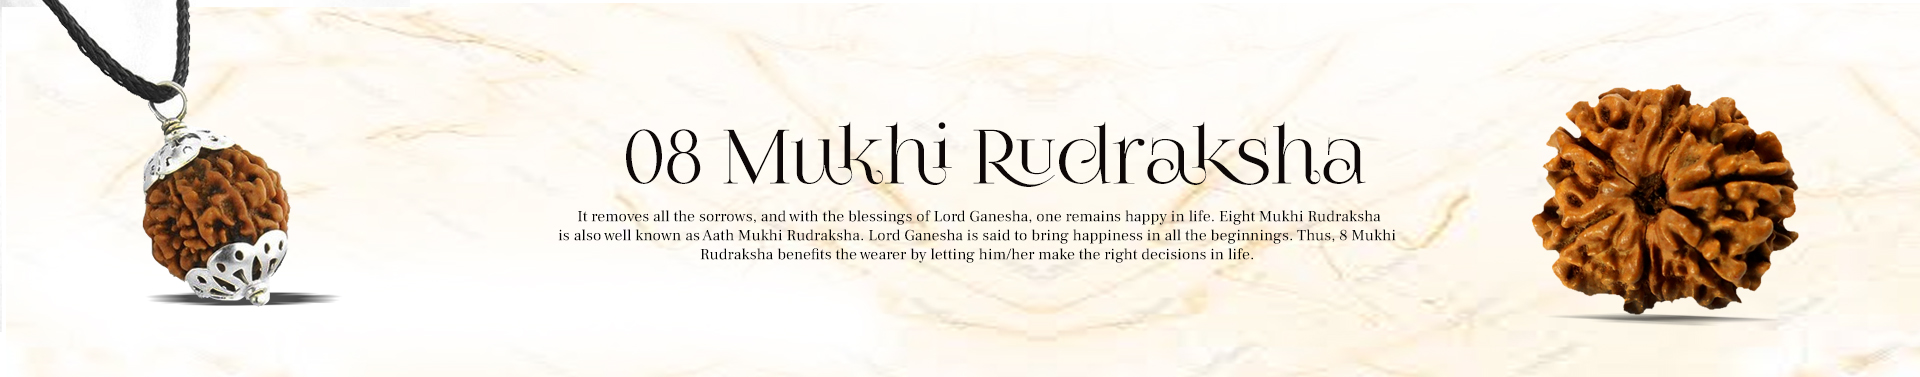 8 Mukhi Rudraksha 